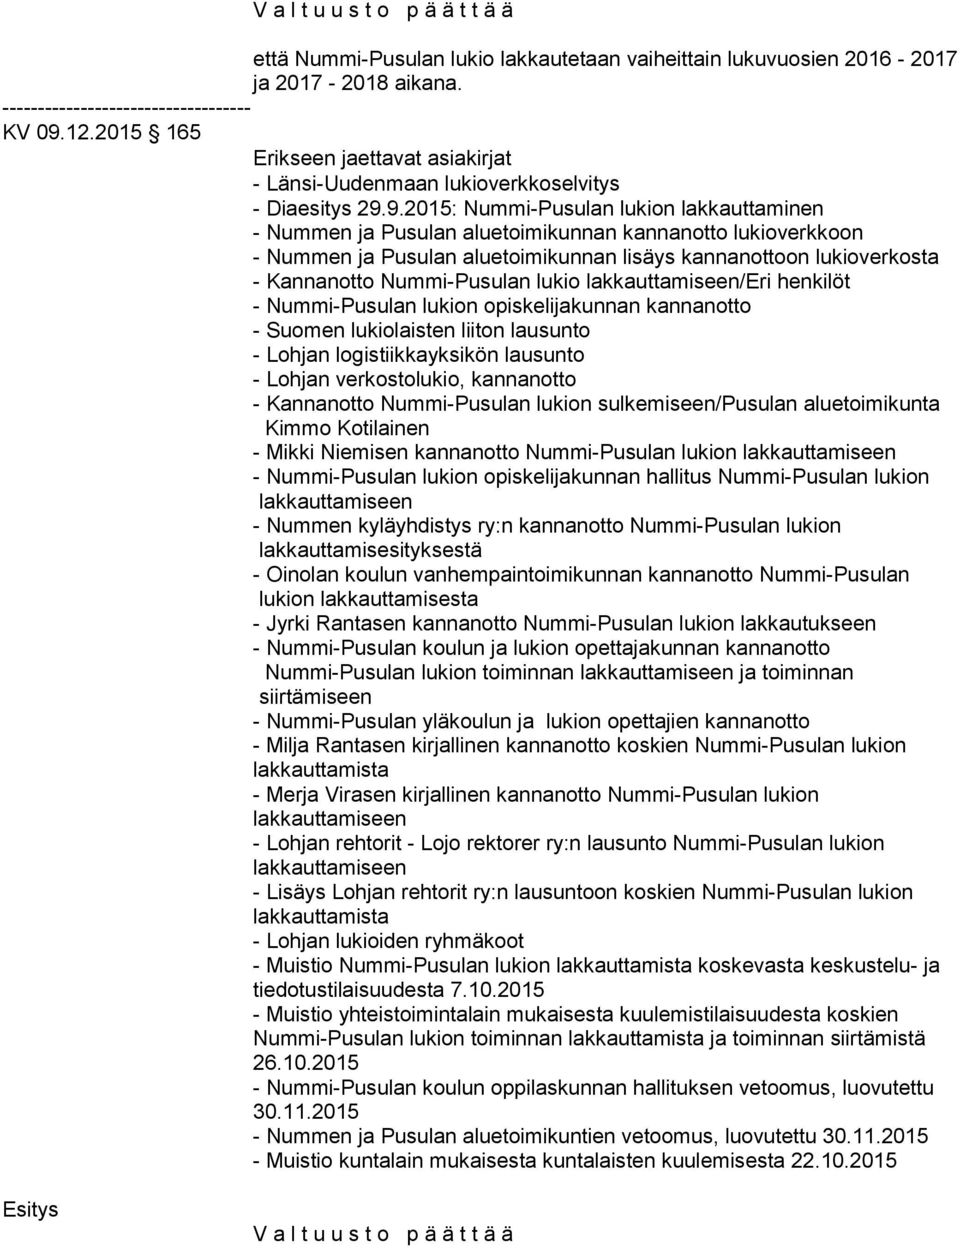 9.2015: Nummi-Pusulan lukion lakkauttaminen - Nummen ja Pusulan aluetoimikunnan kannanotto lukioverkkoon - Nummen ja Pusulan aluetoimikunnan lisäys kannanottoon lukioverkosta - Kannanotto